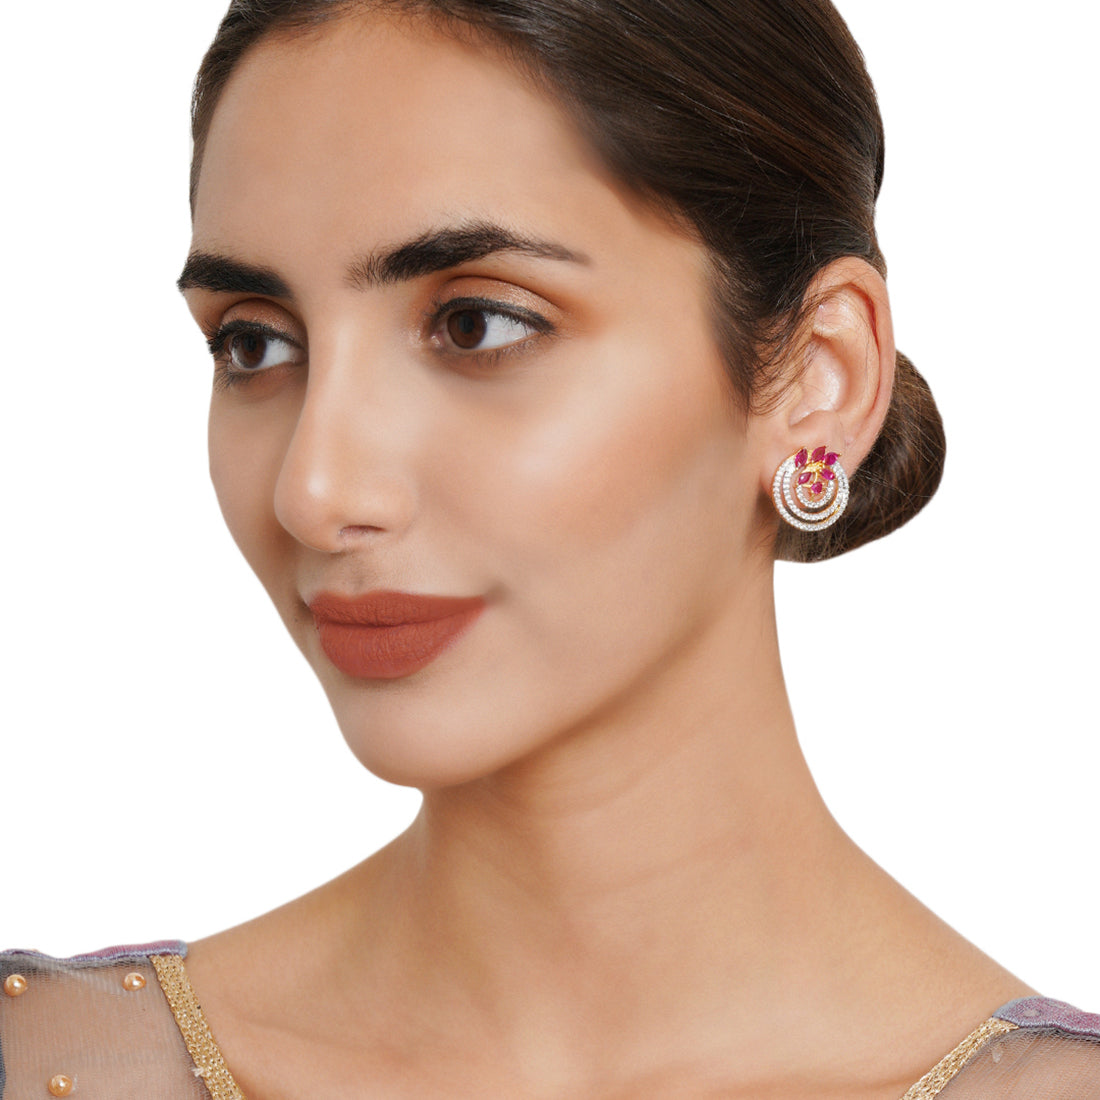 Spakling Essentials Chic Circular Stud Earrings with Gemstones